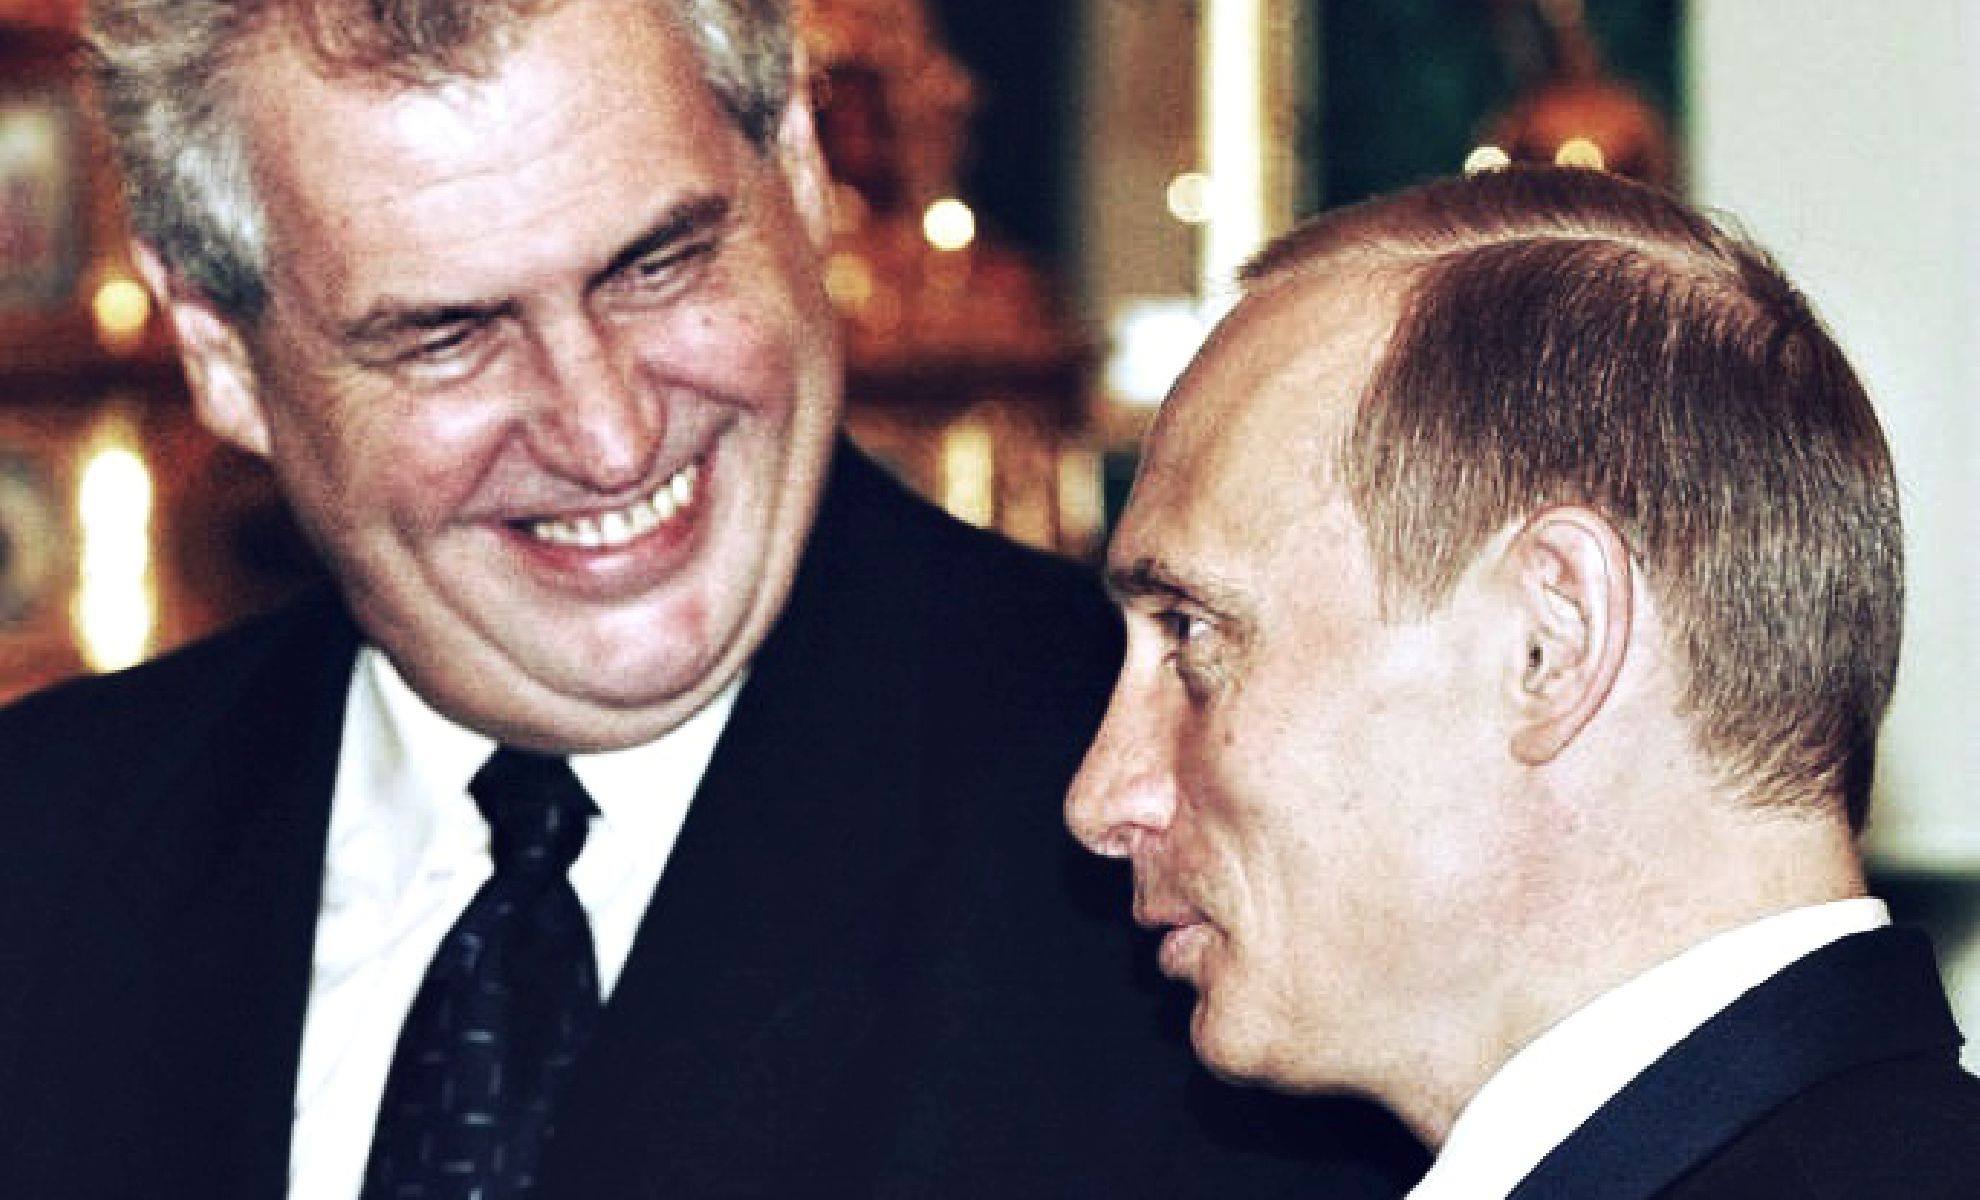 Rosyjski szpieg, który miał zabić czeskich polityków, znajomym doradcy prezydenta Czech!